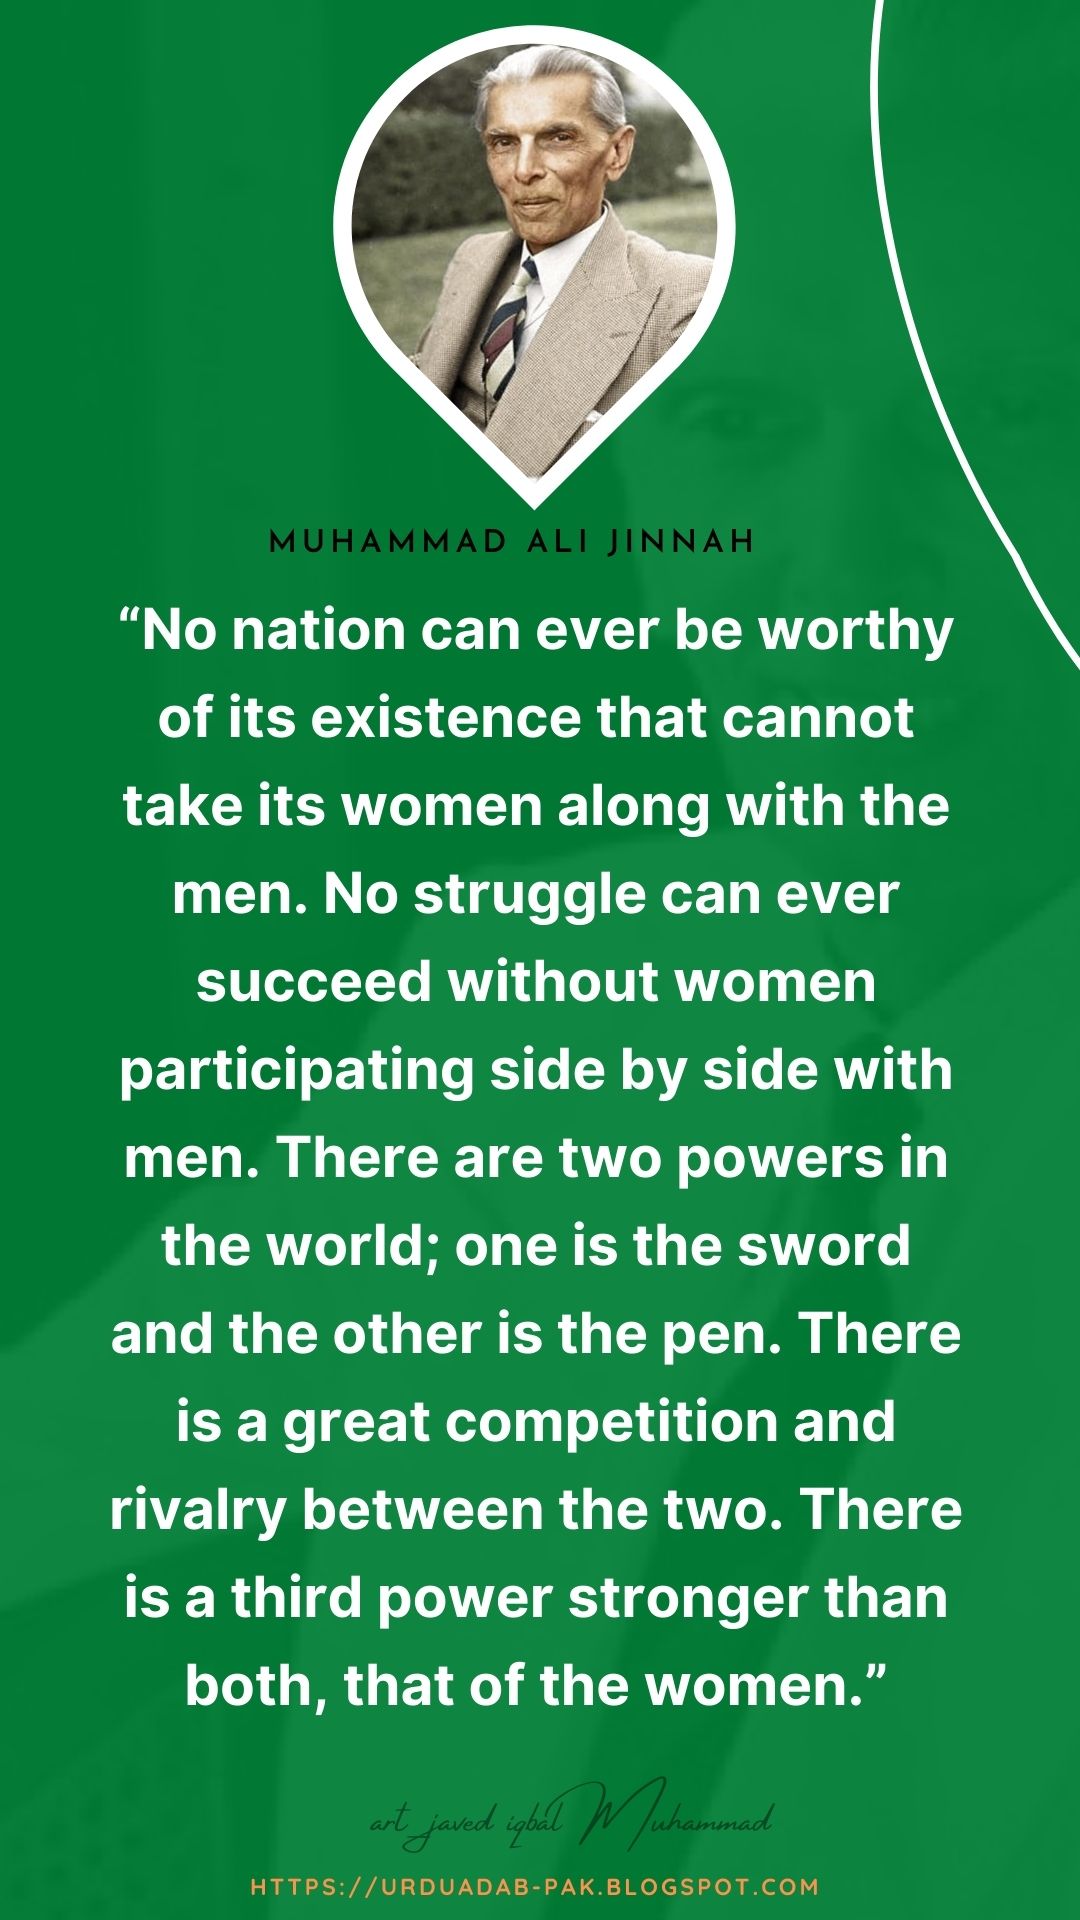 Best Muhammad Ali Jinnah Quotes | Quaid e Azam Muhammad Ali Jinnah Quotes | Muhammad Ali Jinnah WhatsApp status